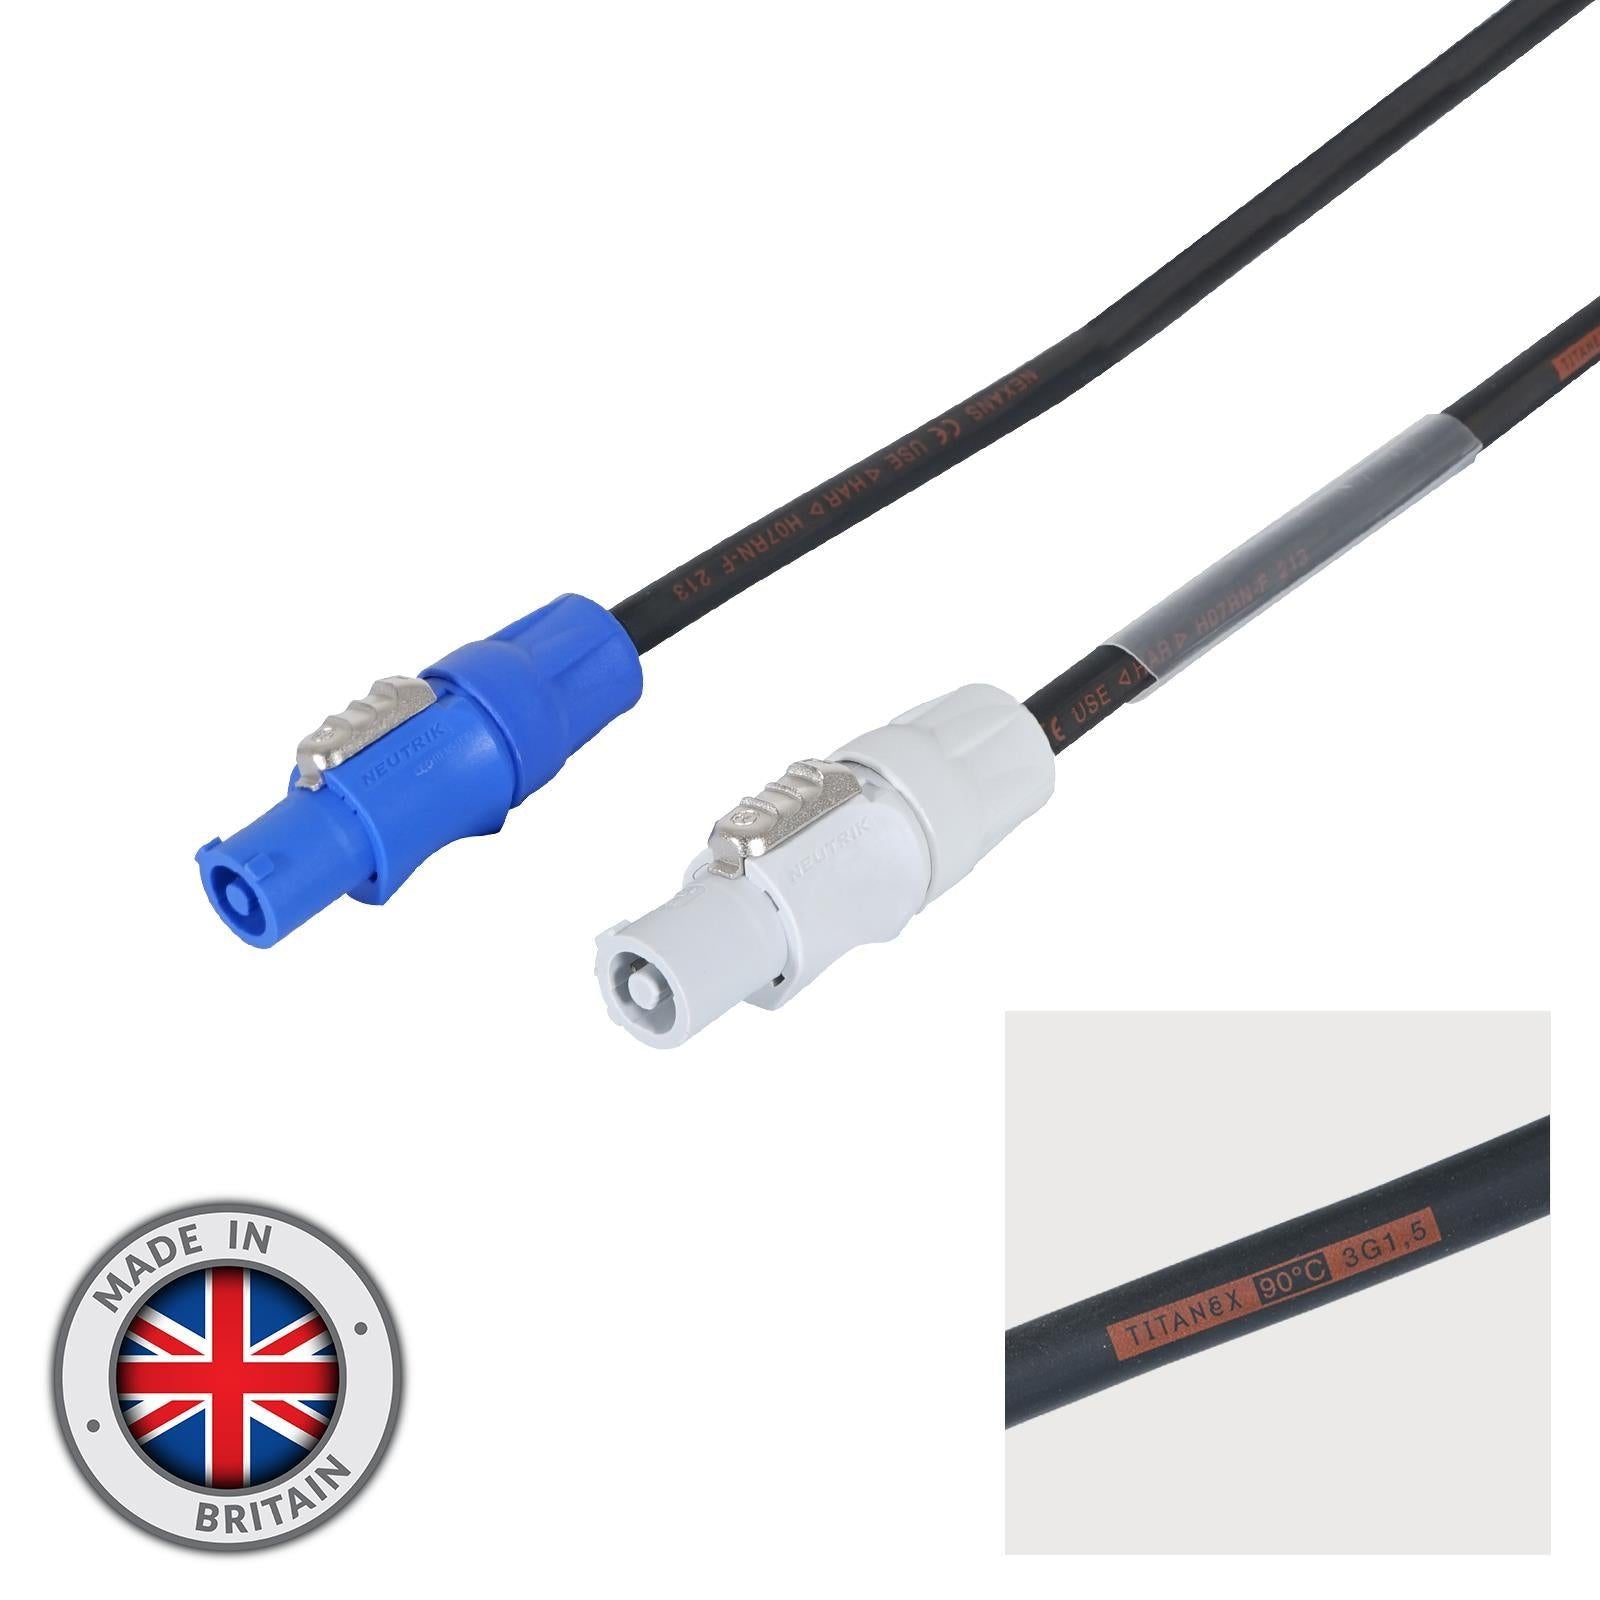 LEDJ 10m Neutrik PowerCON Link Cable – 1.5mm H07RN-F - DY Pro Audio